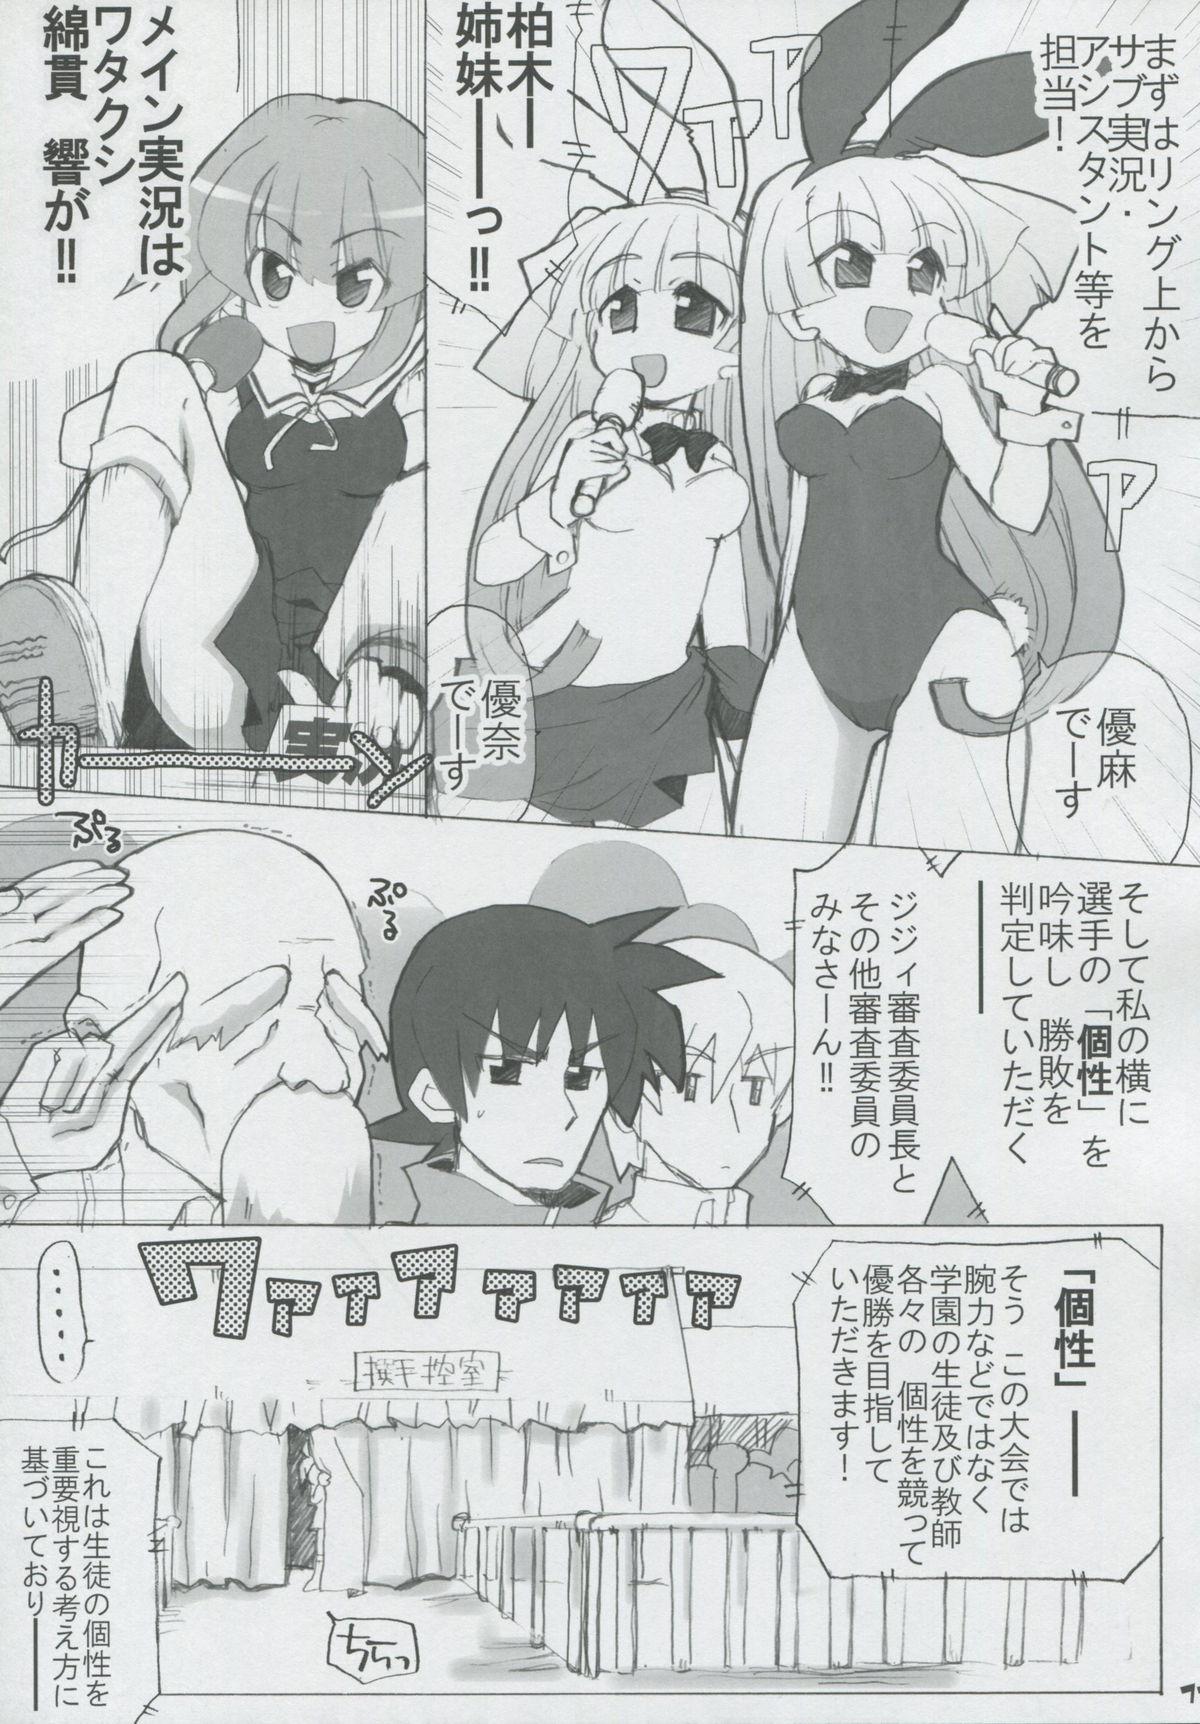 Price Momo Tsuki Monsters 1st-half - Pani poni dash Plug - Page 10